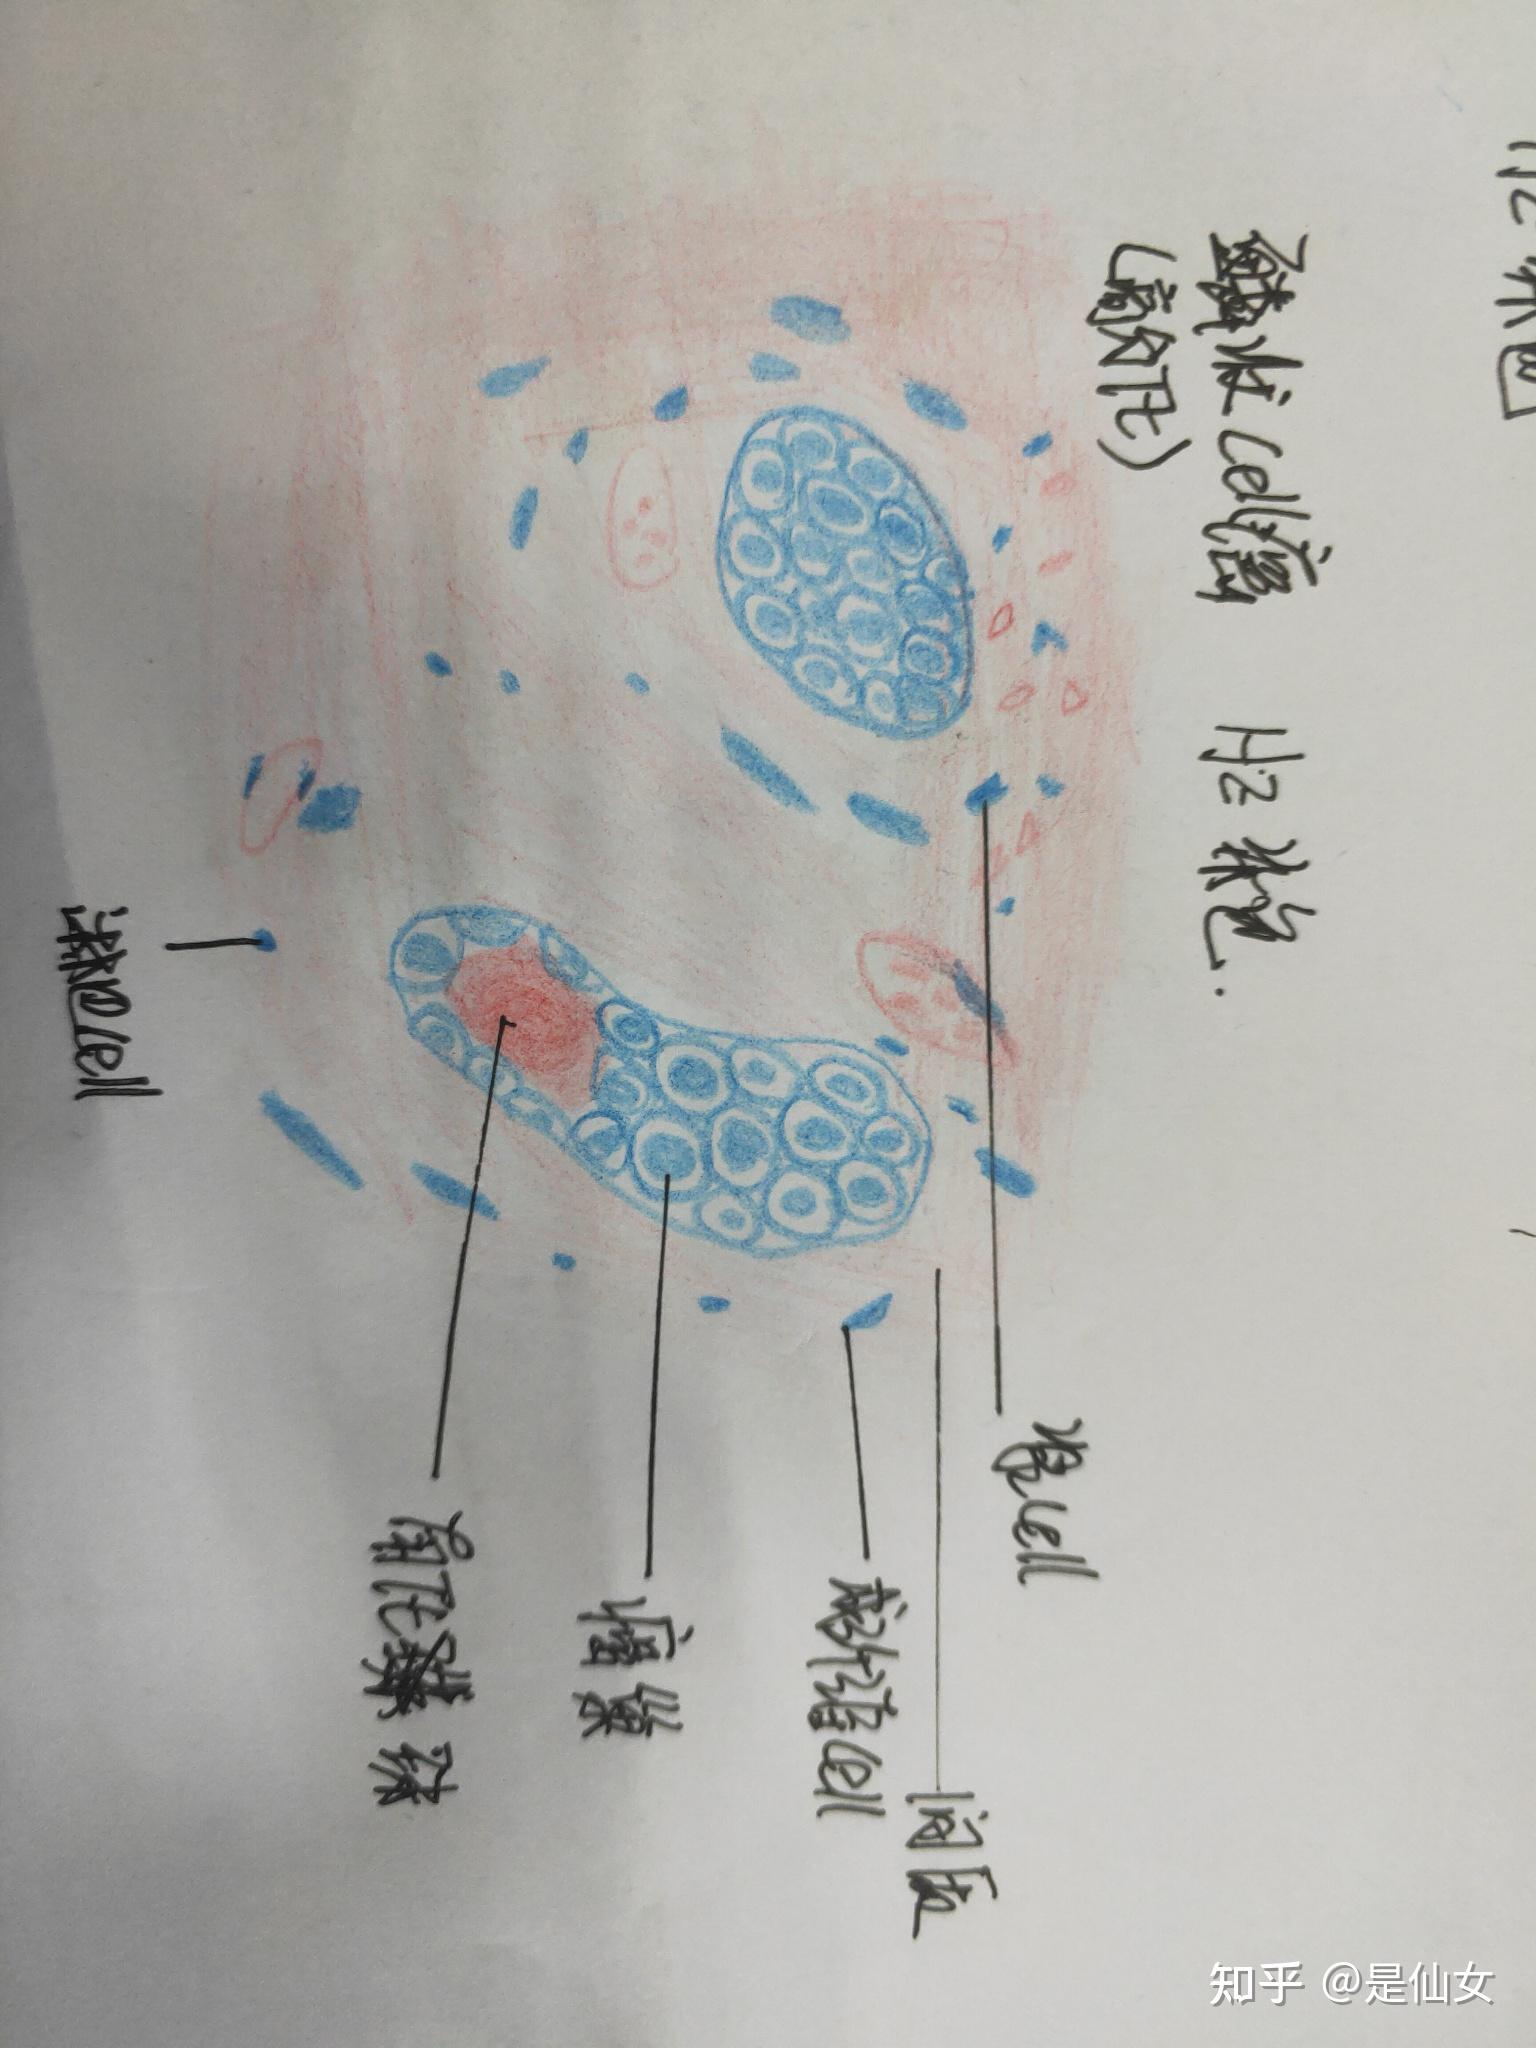 病理学红蓝铅笔绘画图实验课题平滑肌瘤与鳞状上皮细胞癌